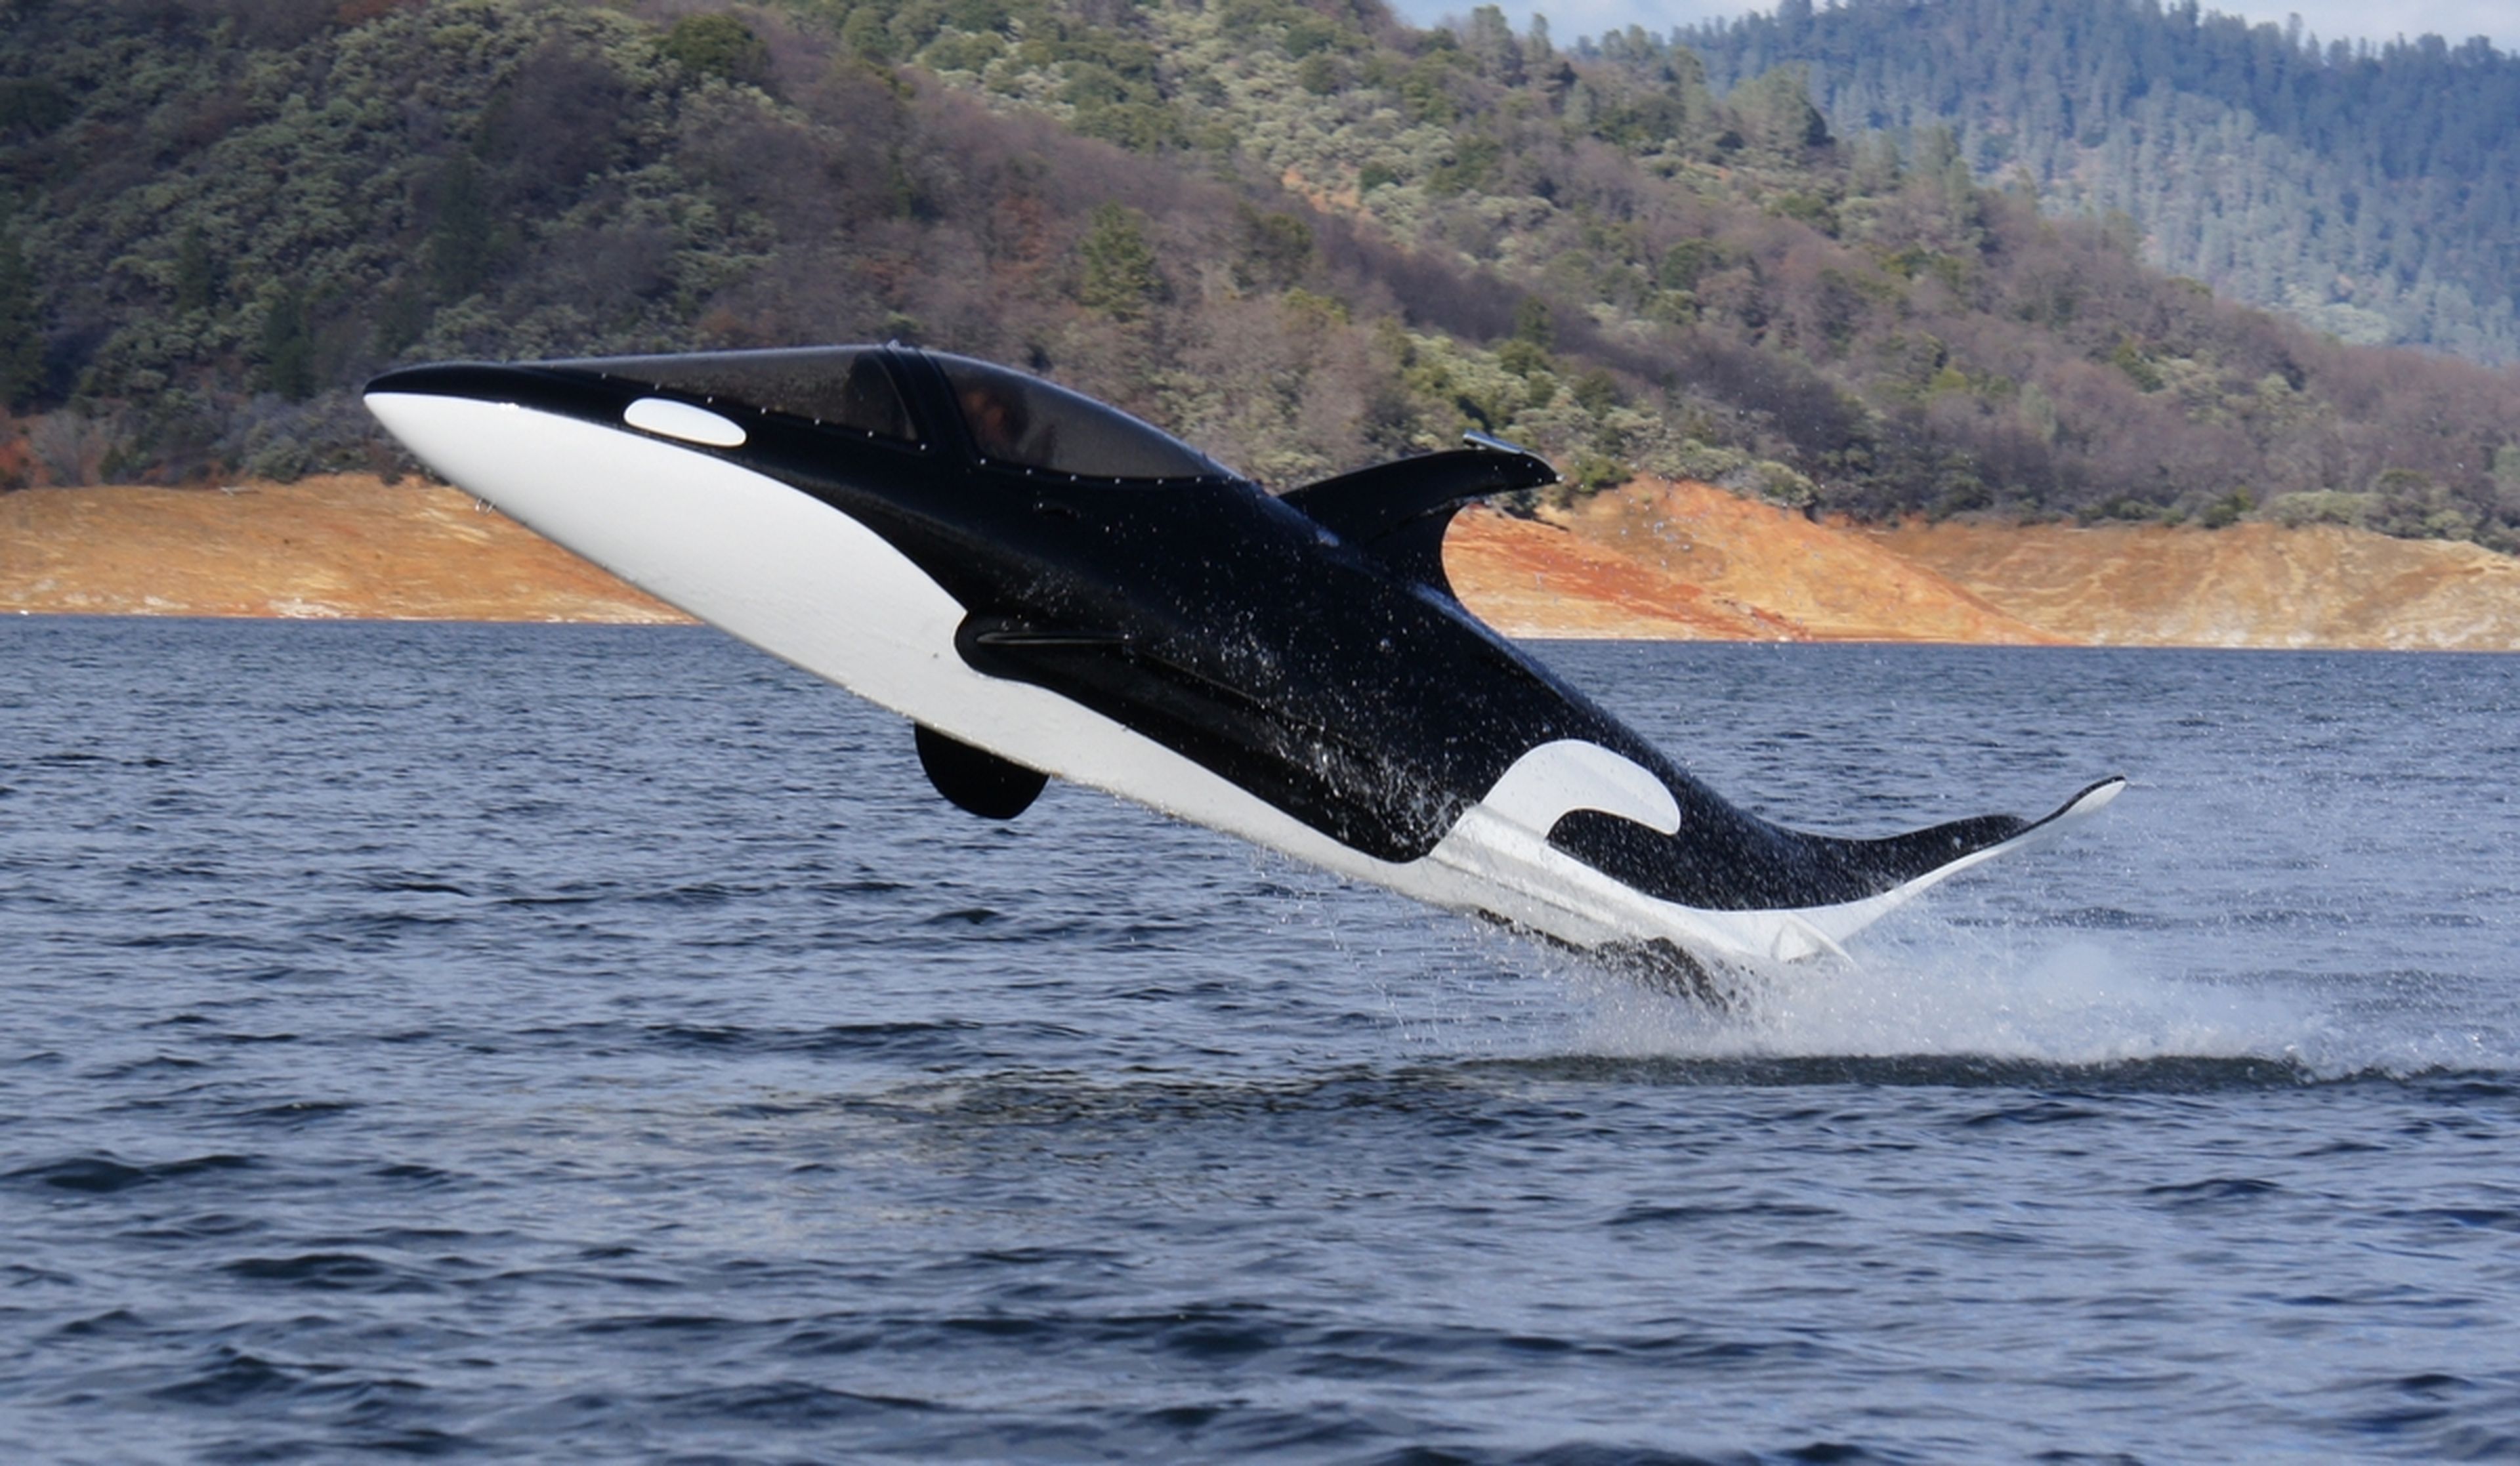 El semisubmarino orca asesina está pensado para disfrutar... y para dar algún susto...